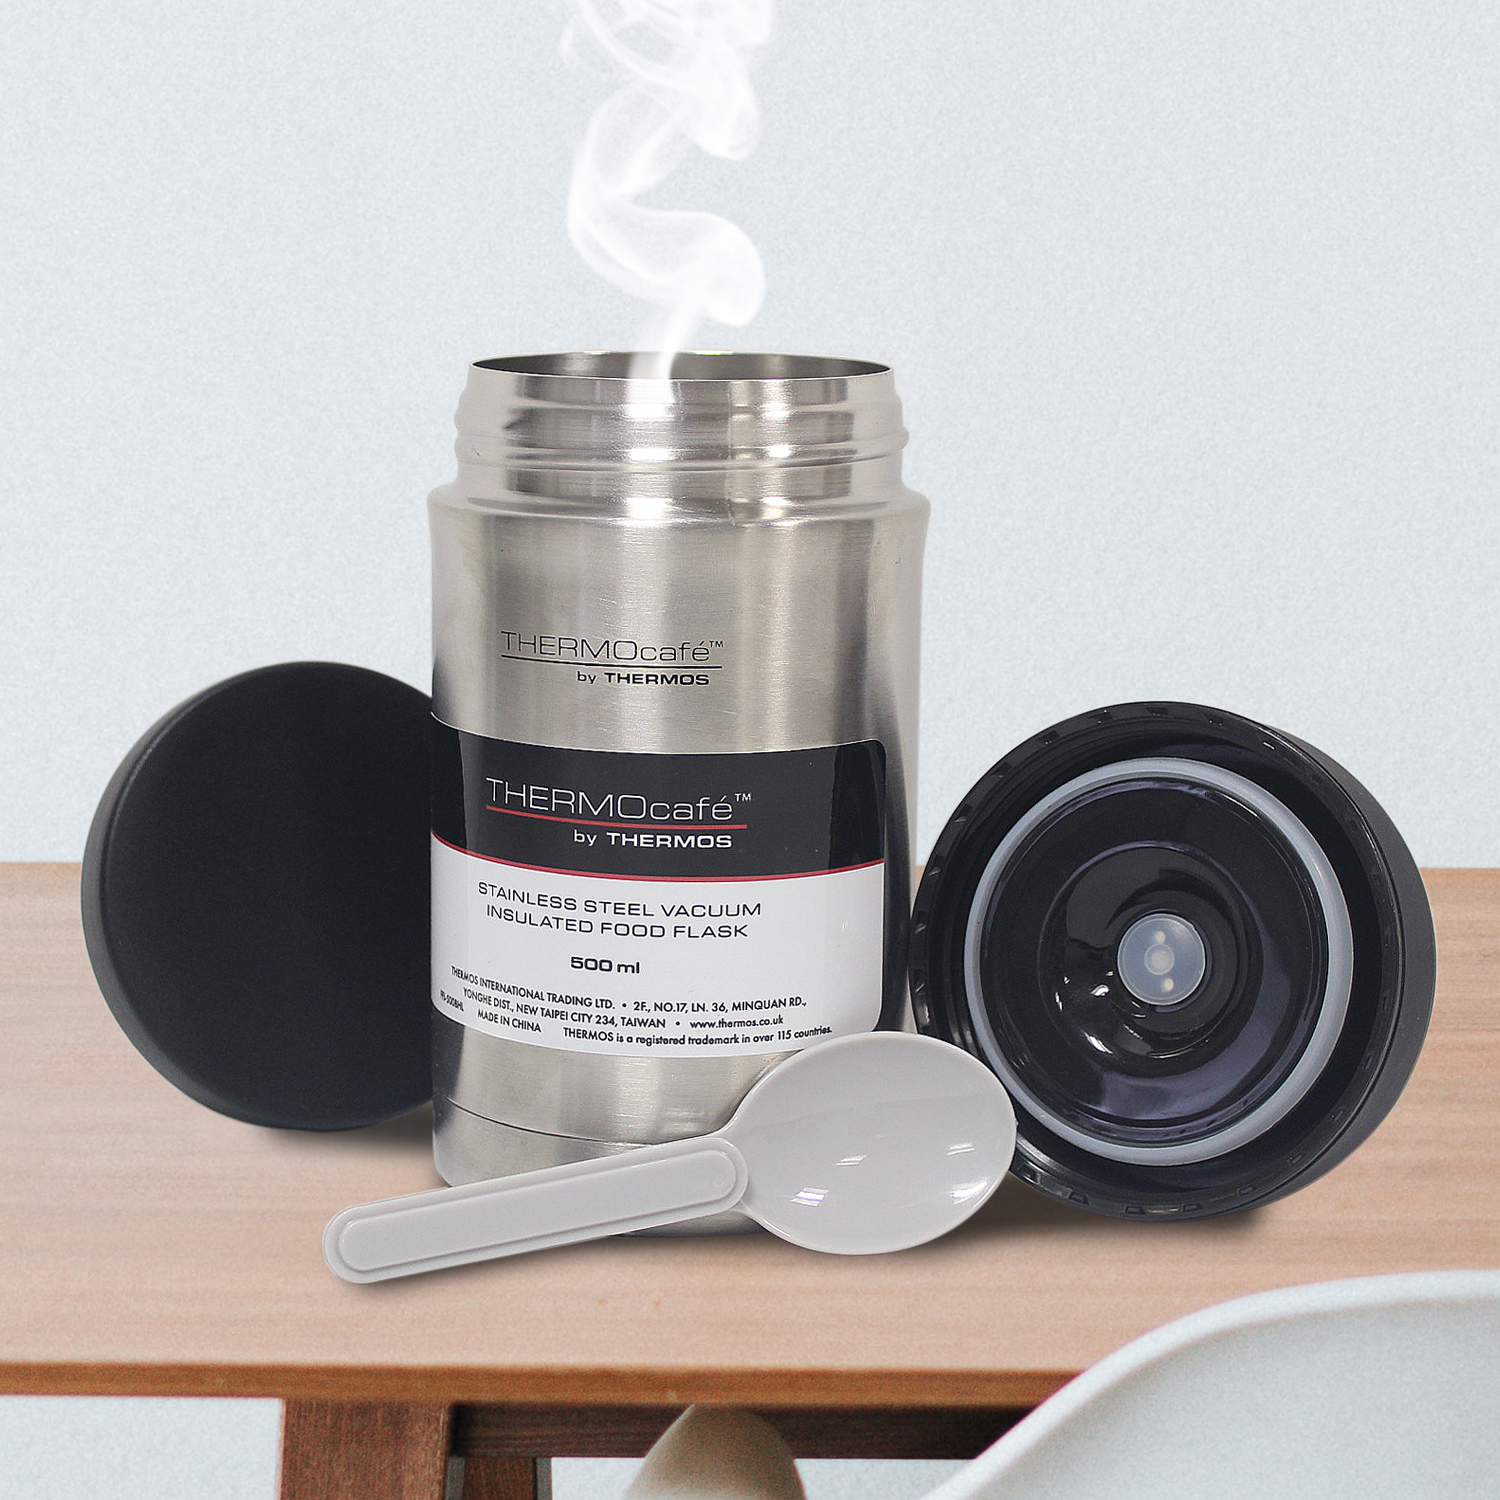 thermos thermocafé translucent desk mug